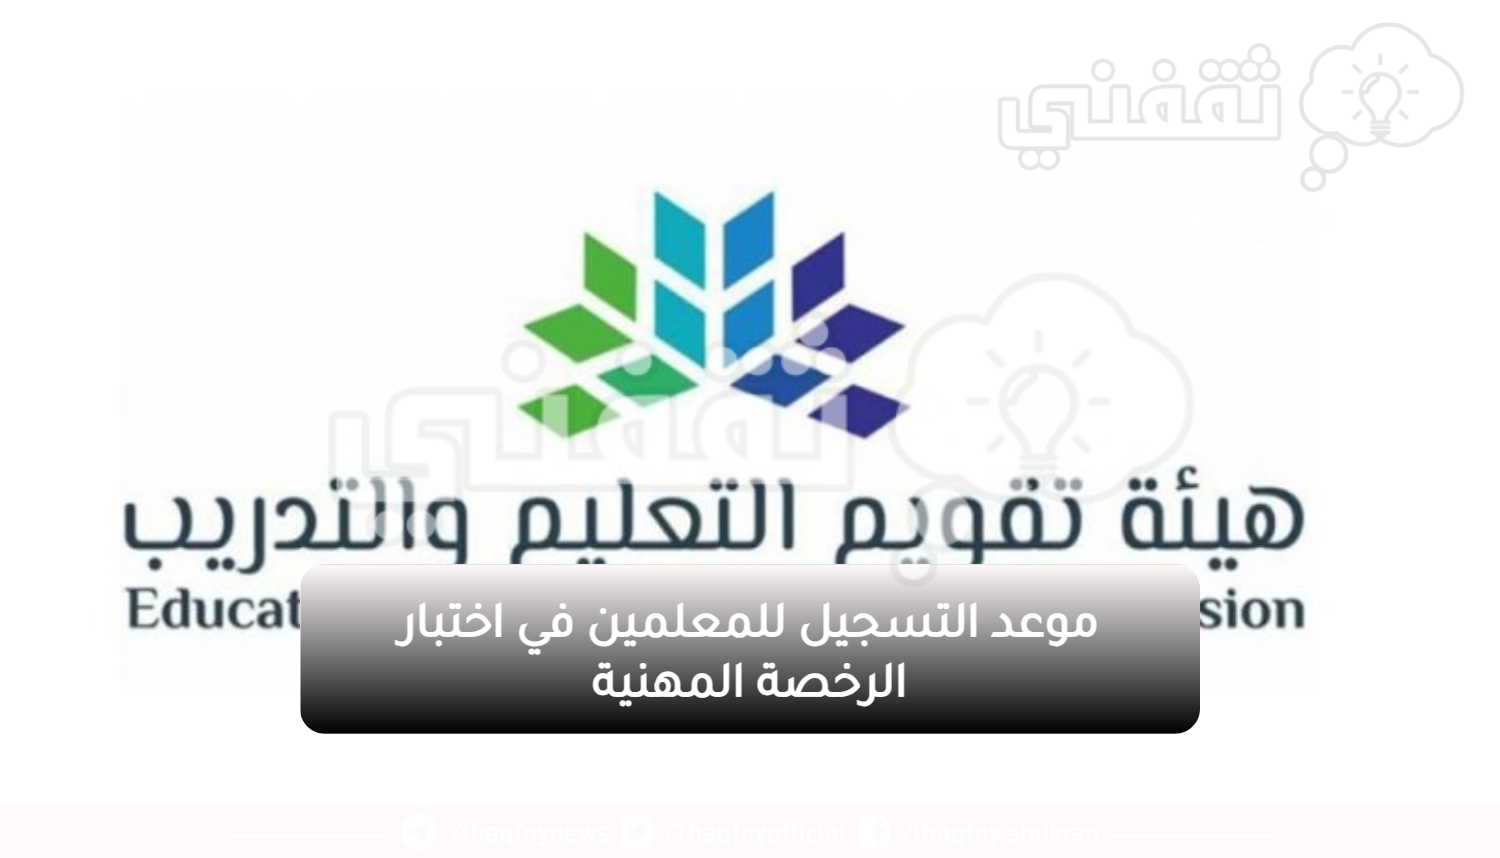 موعد التسجيل للمعلمين في اختبار الرخصة المهنية - مدونة التقنية العربية